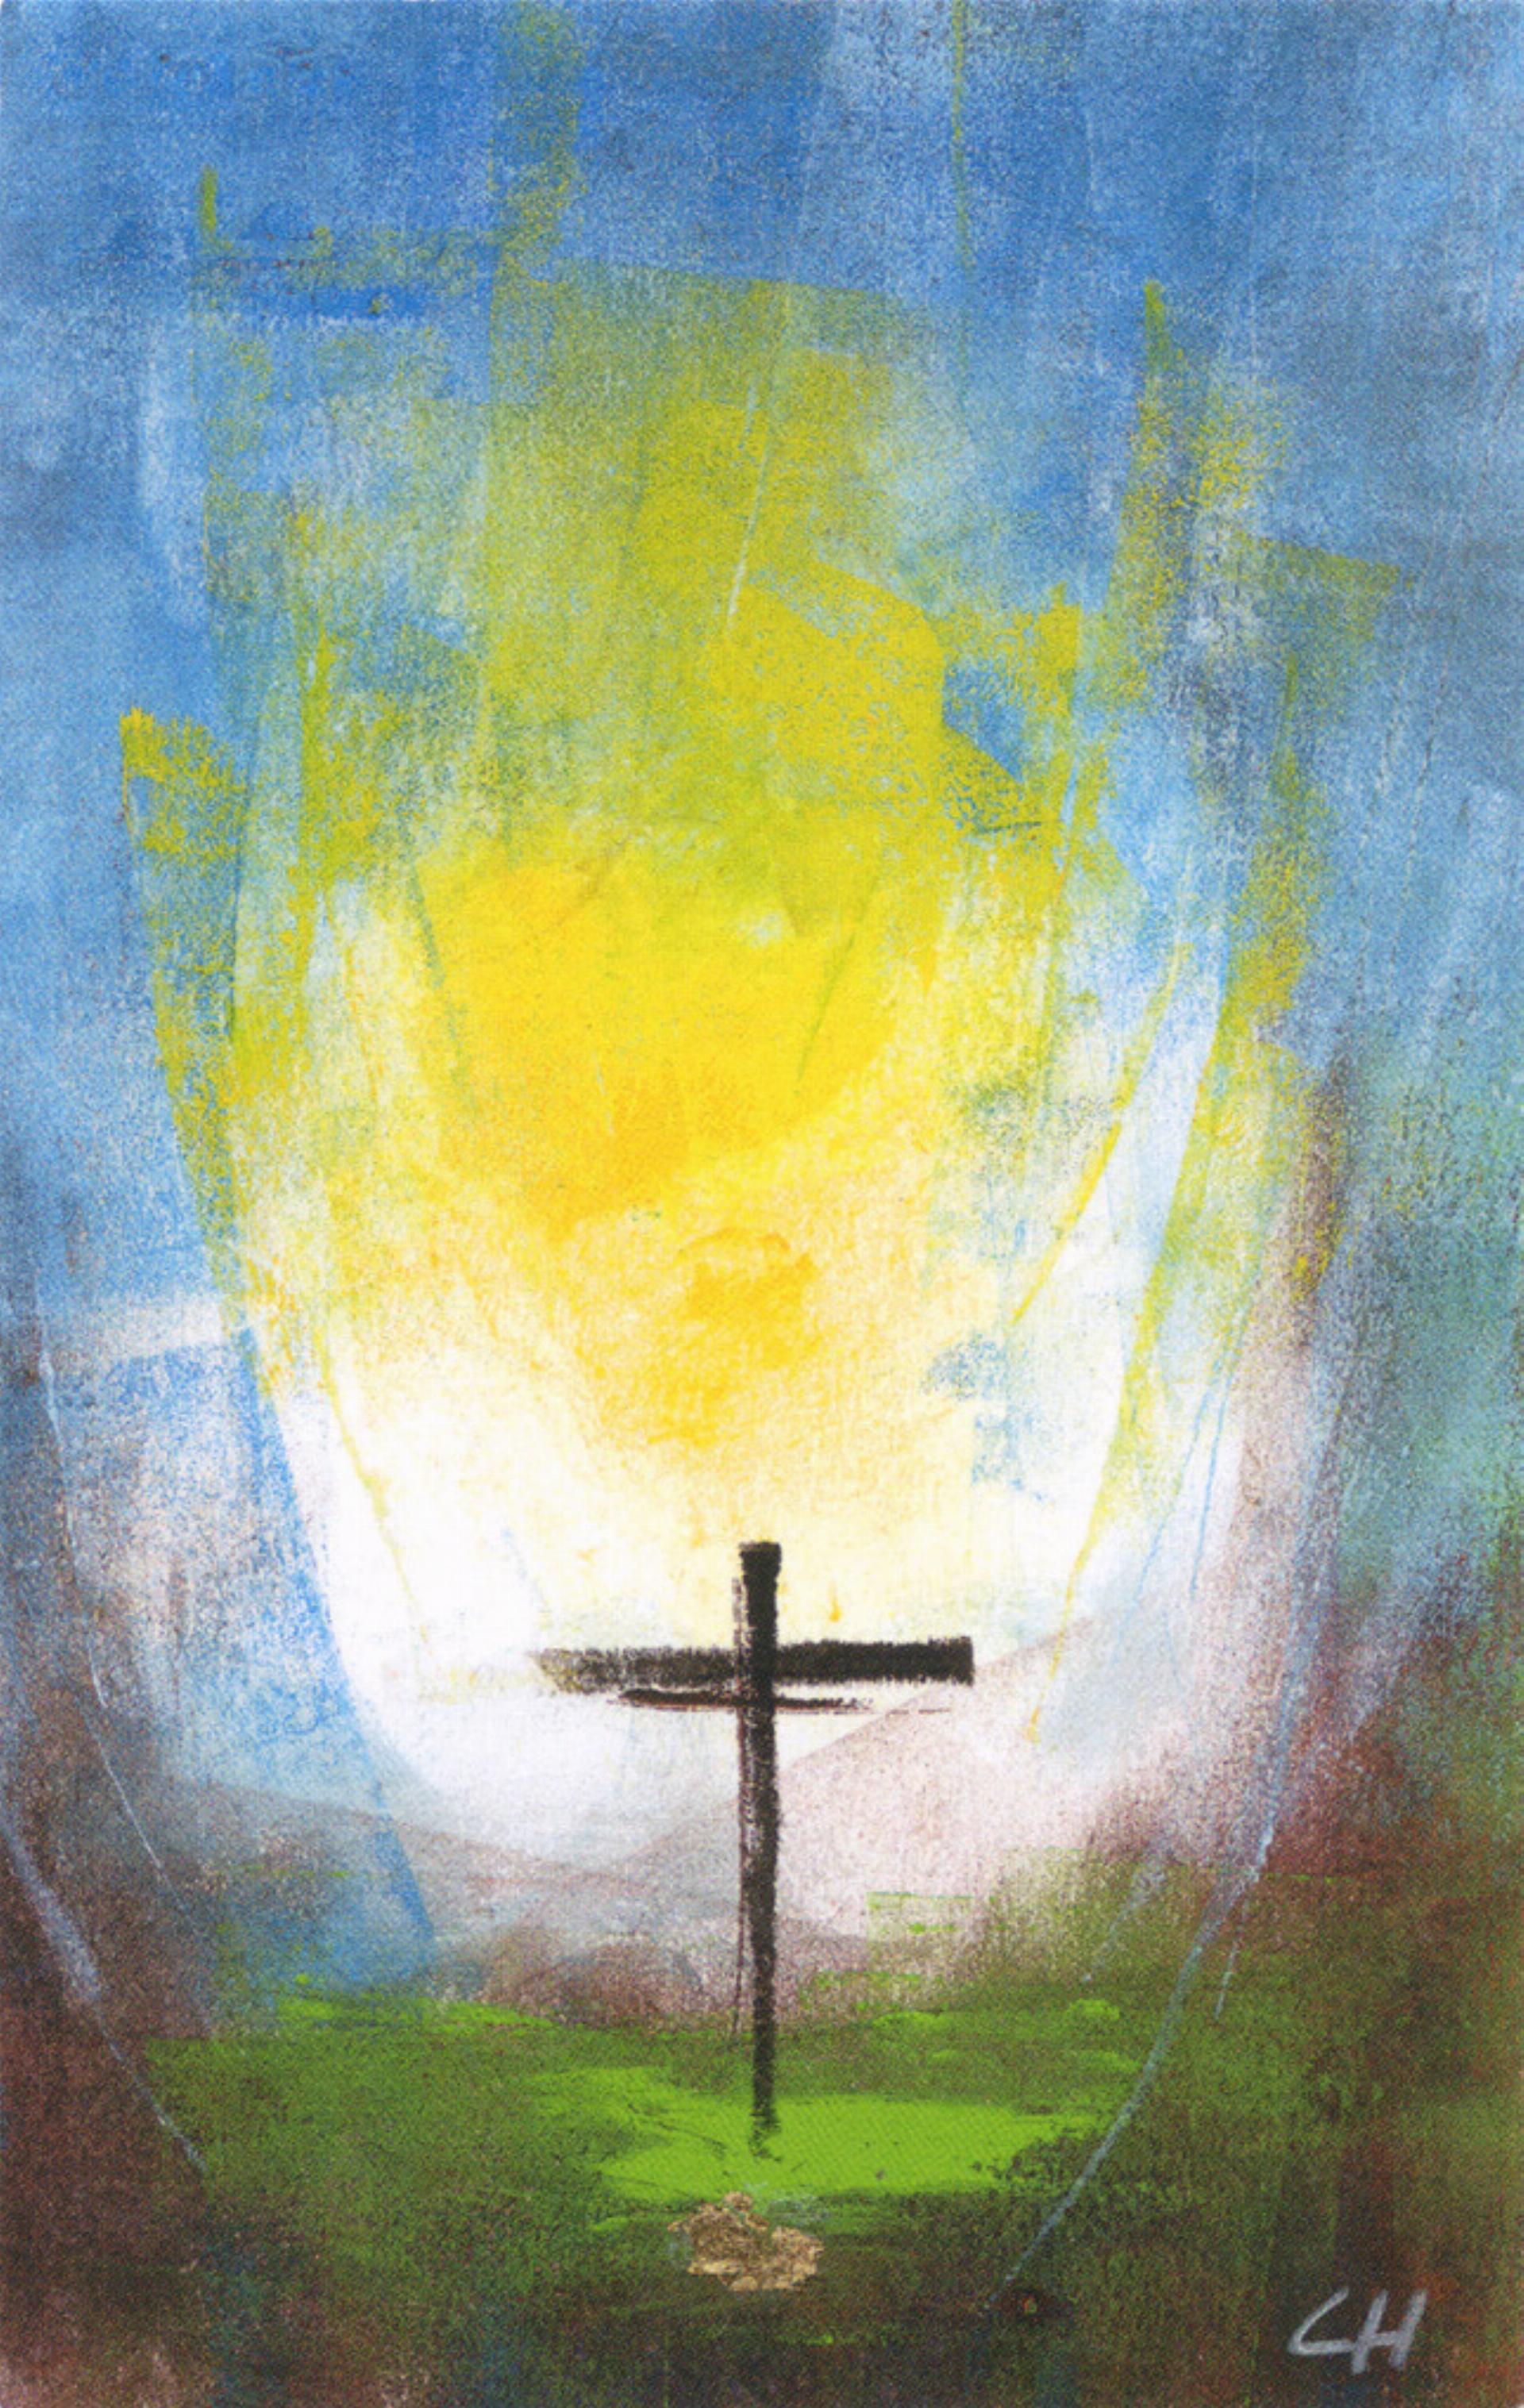 Das Osterfest und der christliche Glauben sollen Lichtblicke in einer schwierigen Zeit 
ermöglichen.
Bild zvg